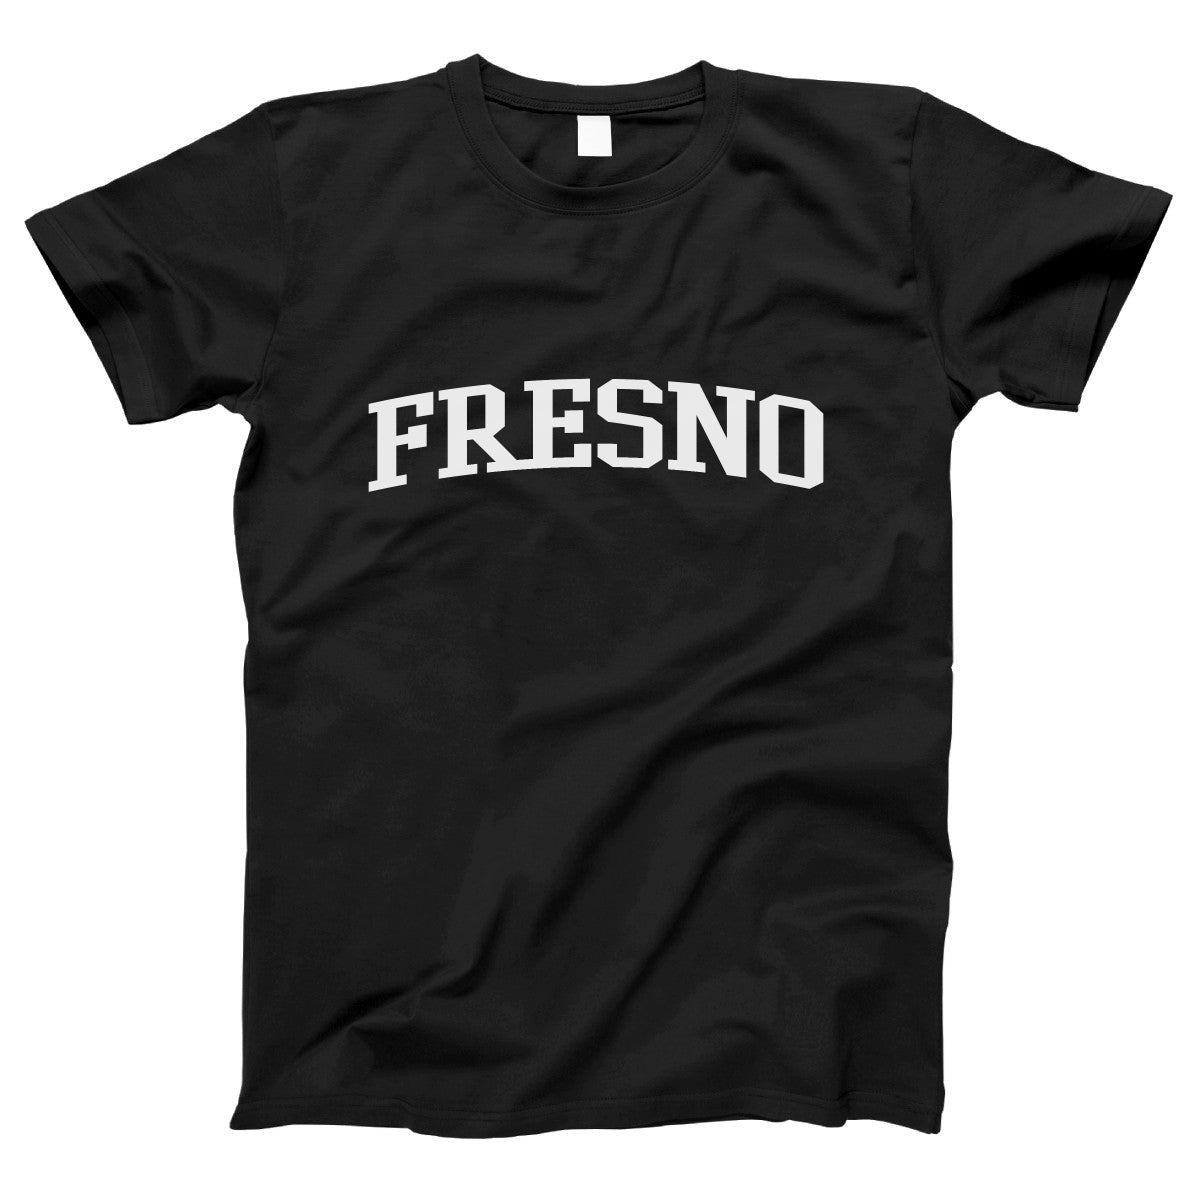 Fresno Women's T-shirt